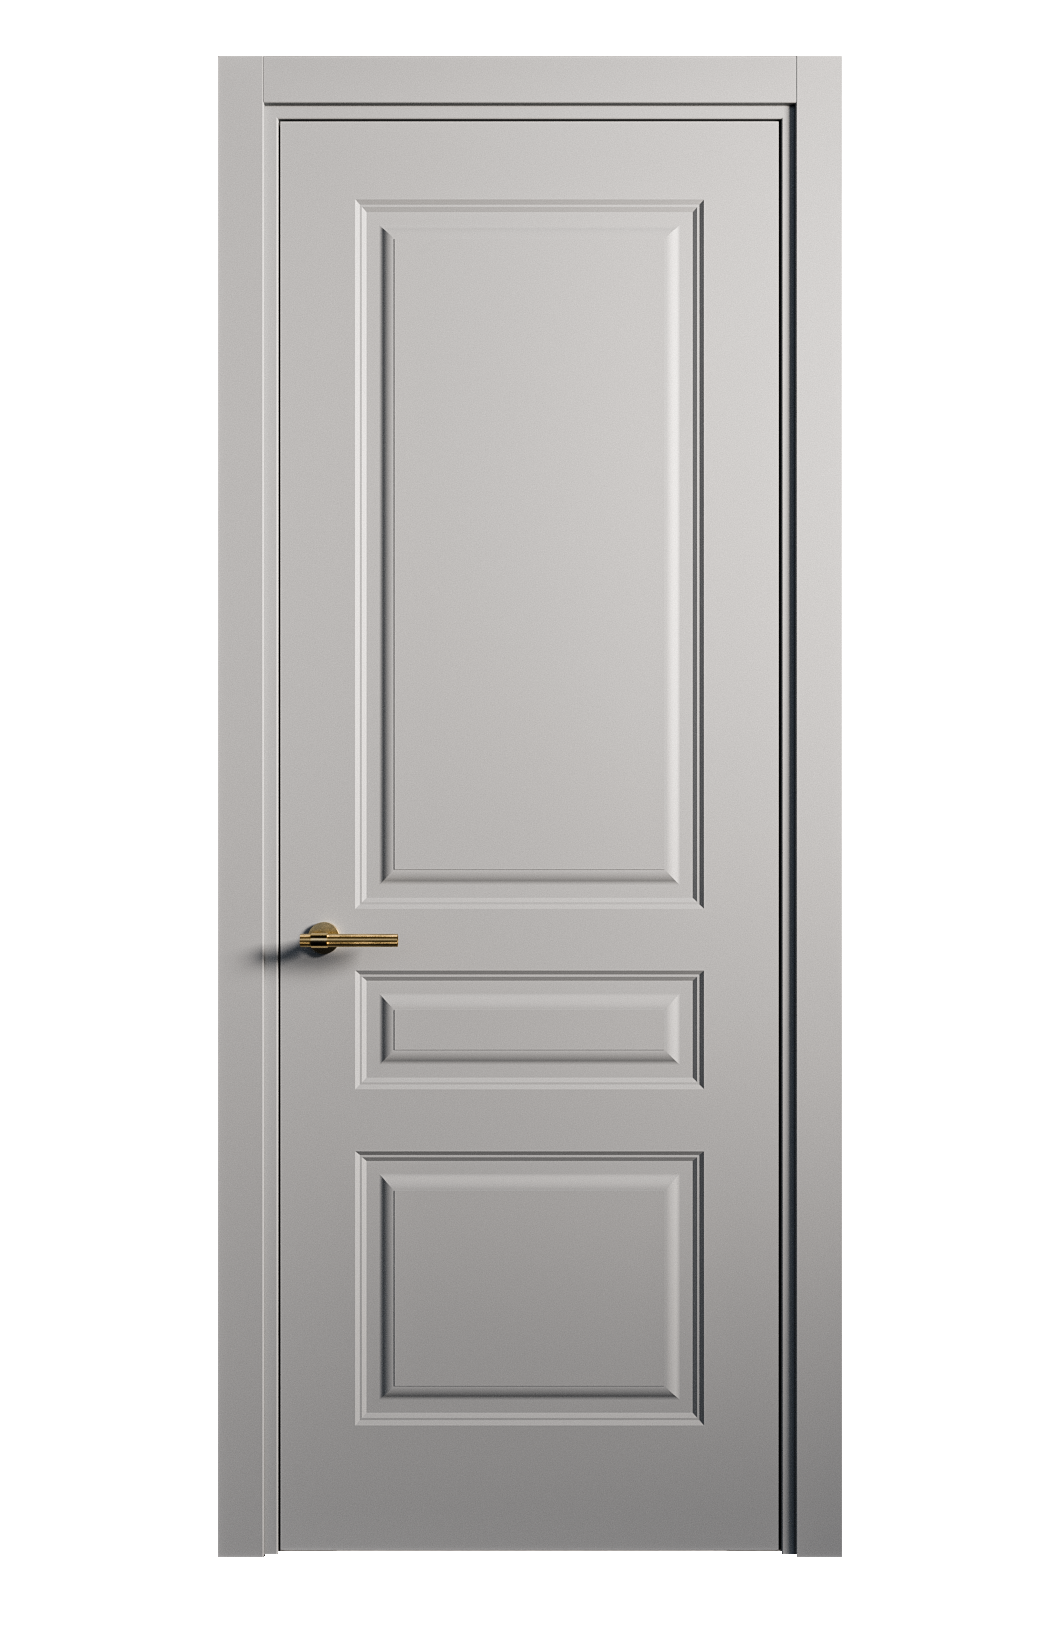 Межкомнатная дверь Вита-2 глухая эмаль ral 7040 26395